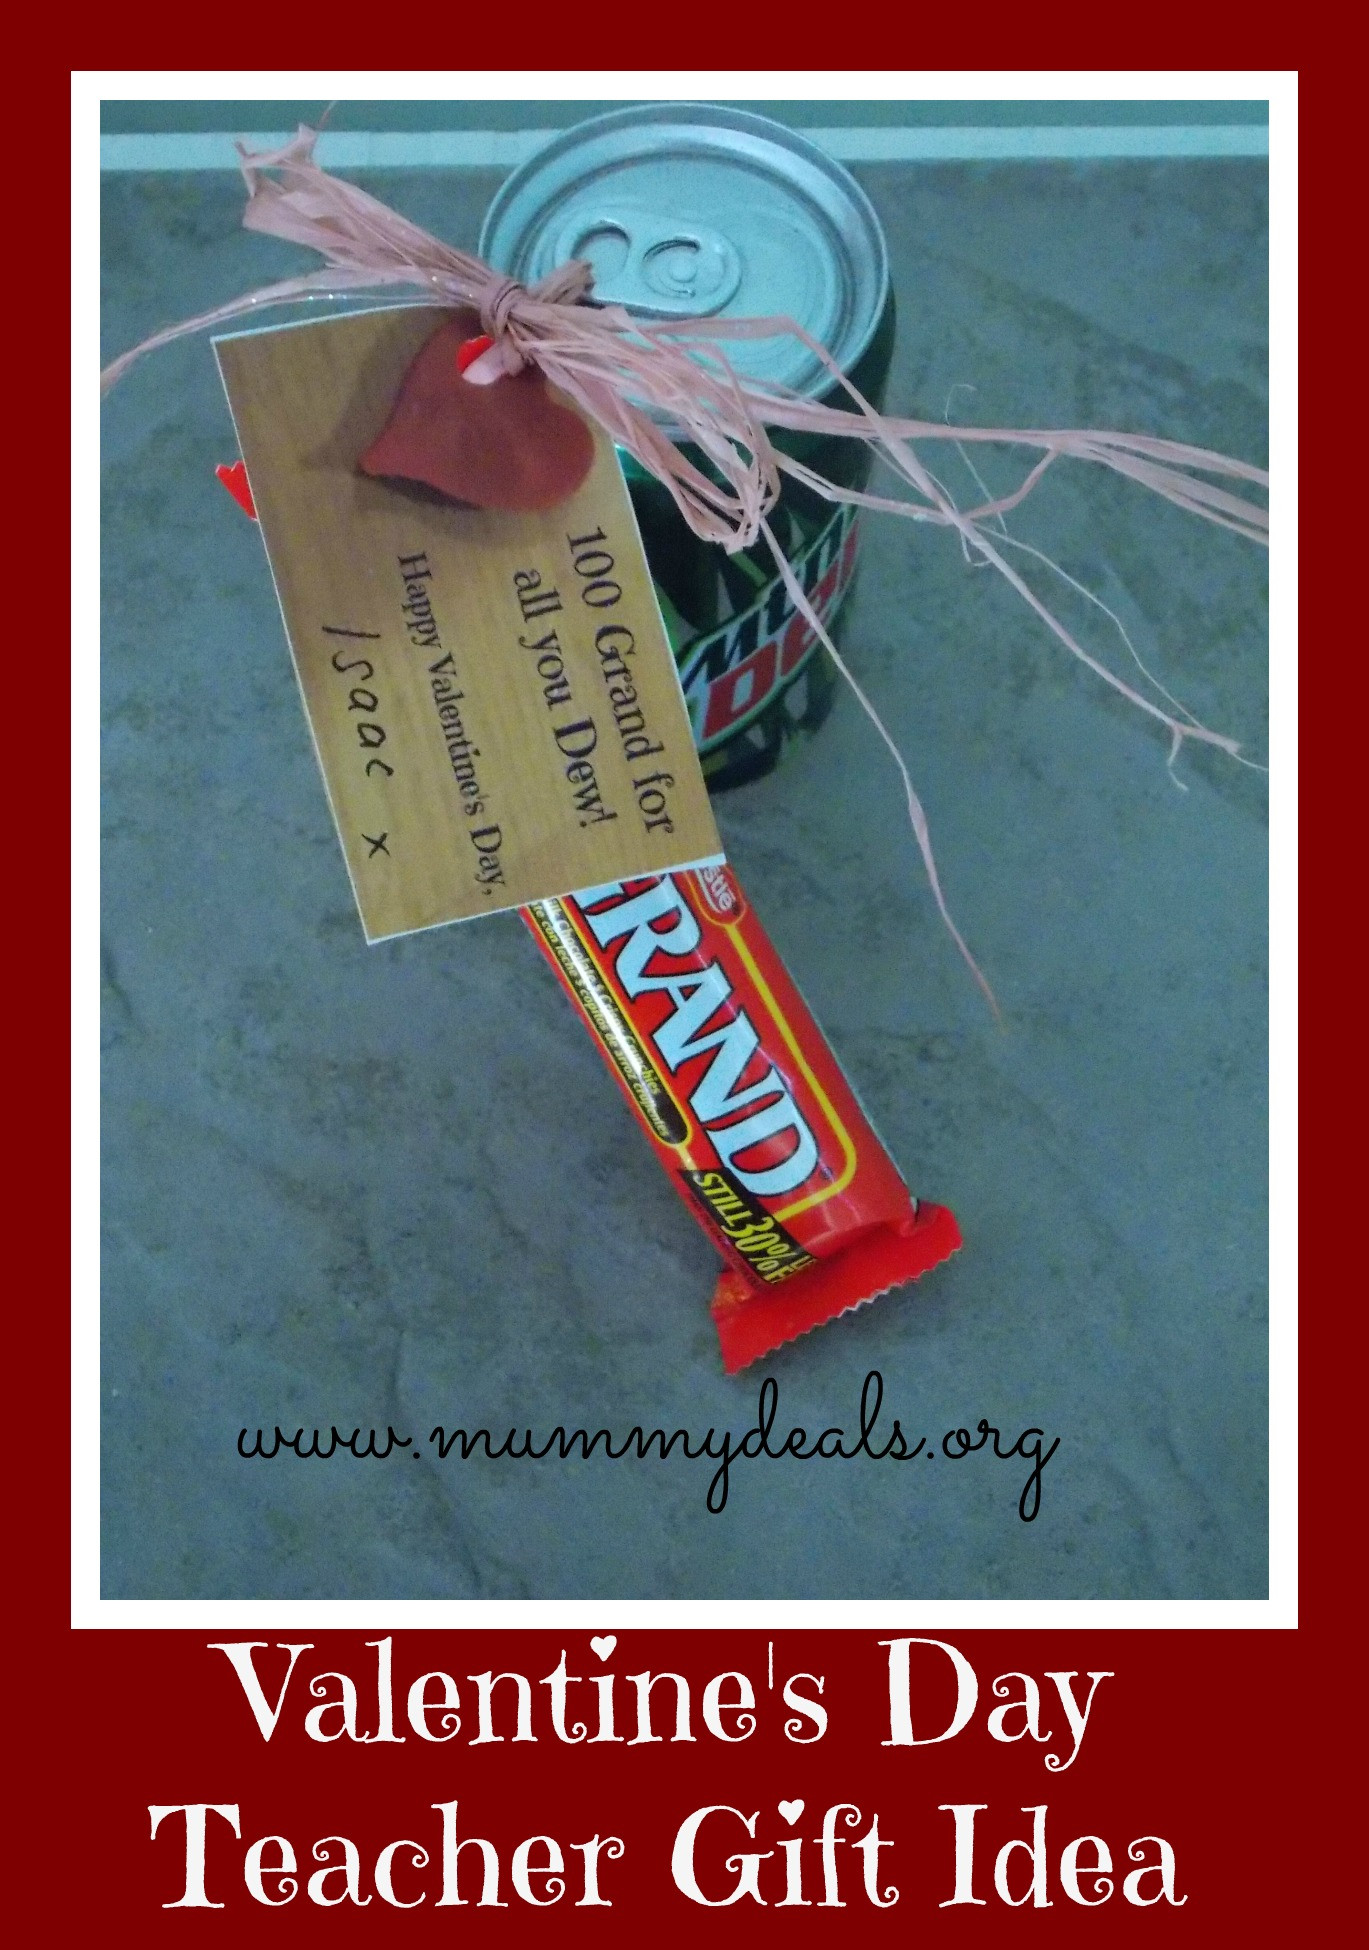 Best ideas about Teacher Valentines Gift Ideas
. Save or Pin 6 Valentine s Day Teacher Gift Ideas Mummy Deals Now.